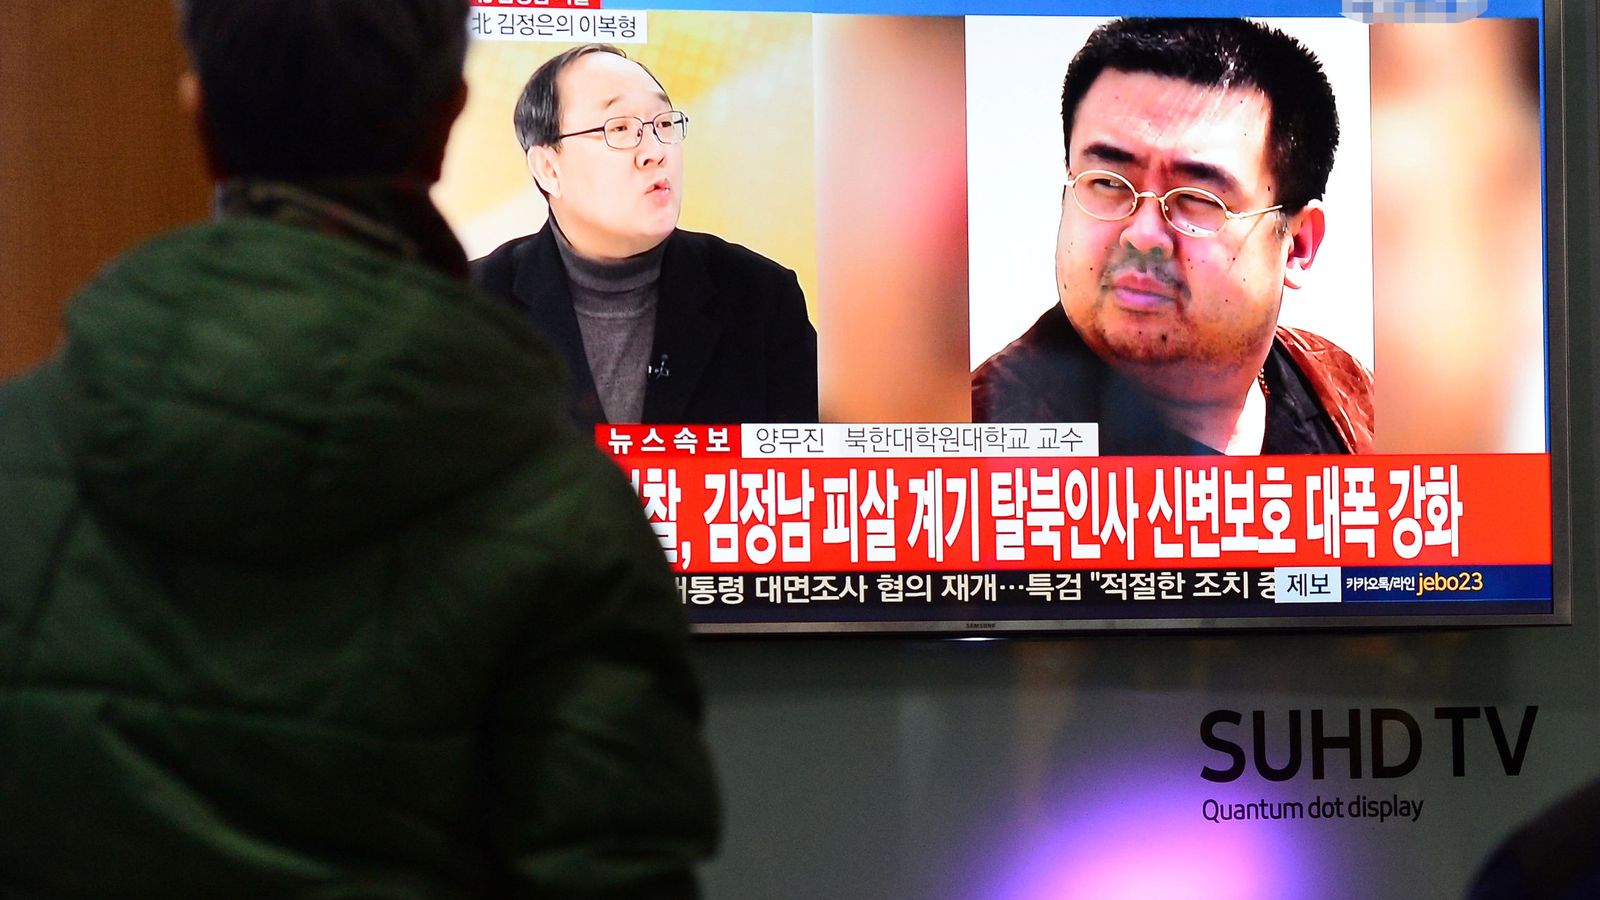 Foto: Pantallas de televisión muestran noticias sobre la muerte de Kim Jong-nam, en Seúl. (Reuters)